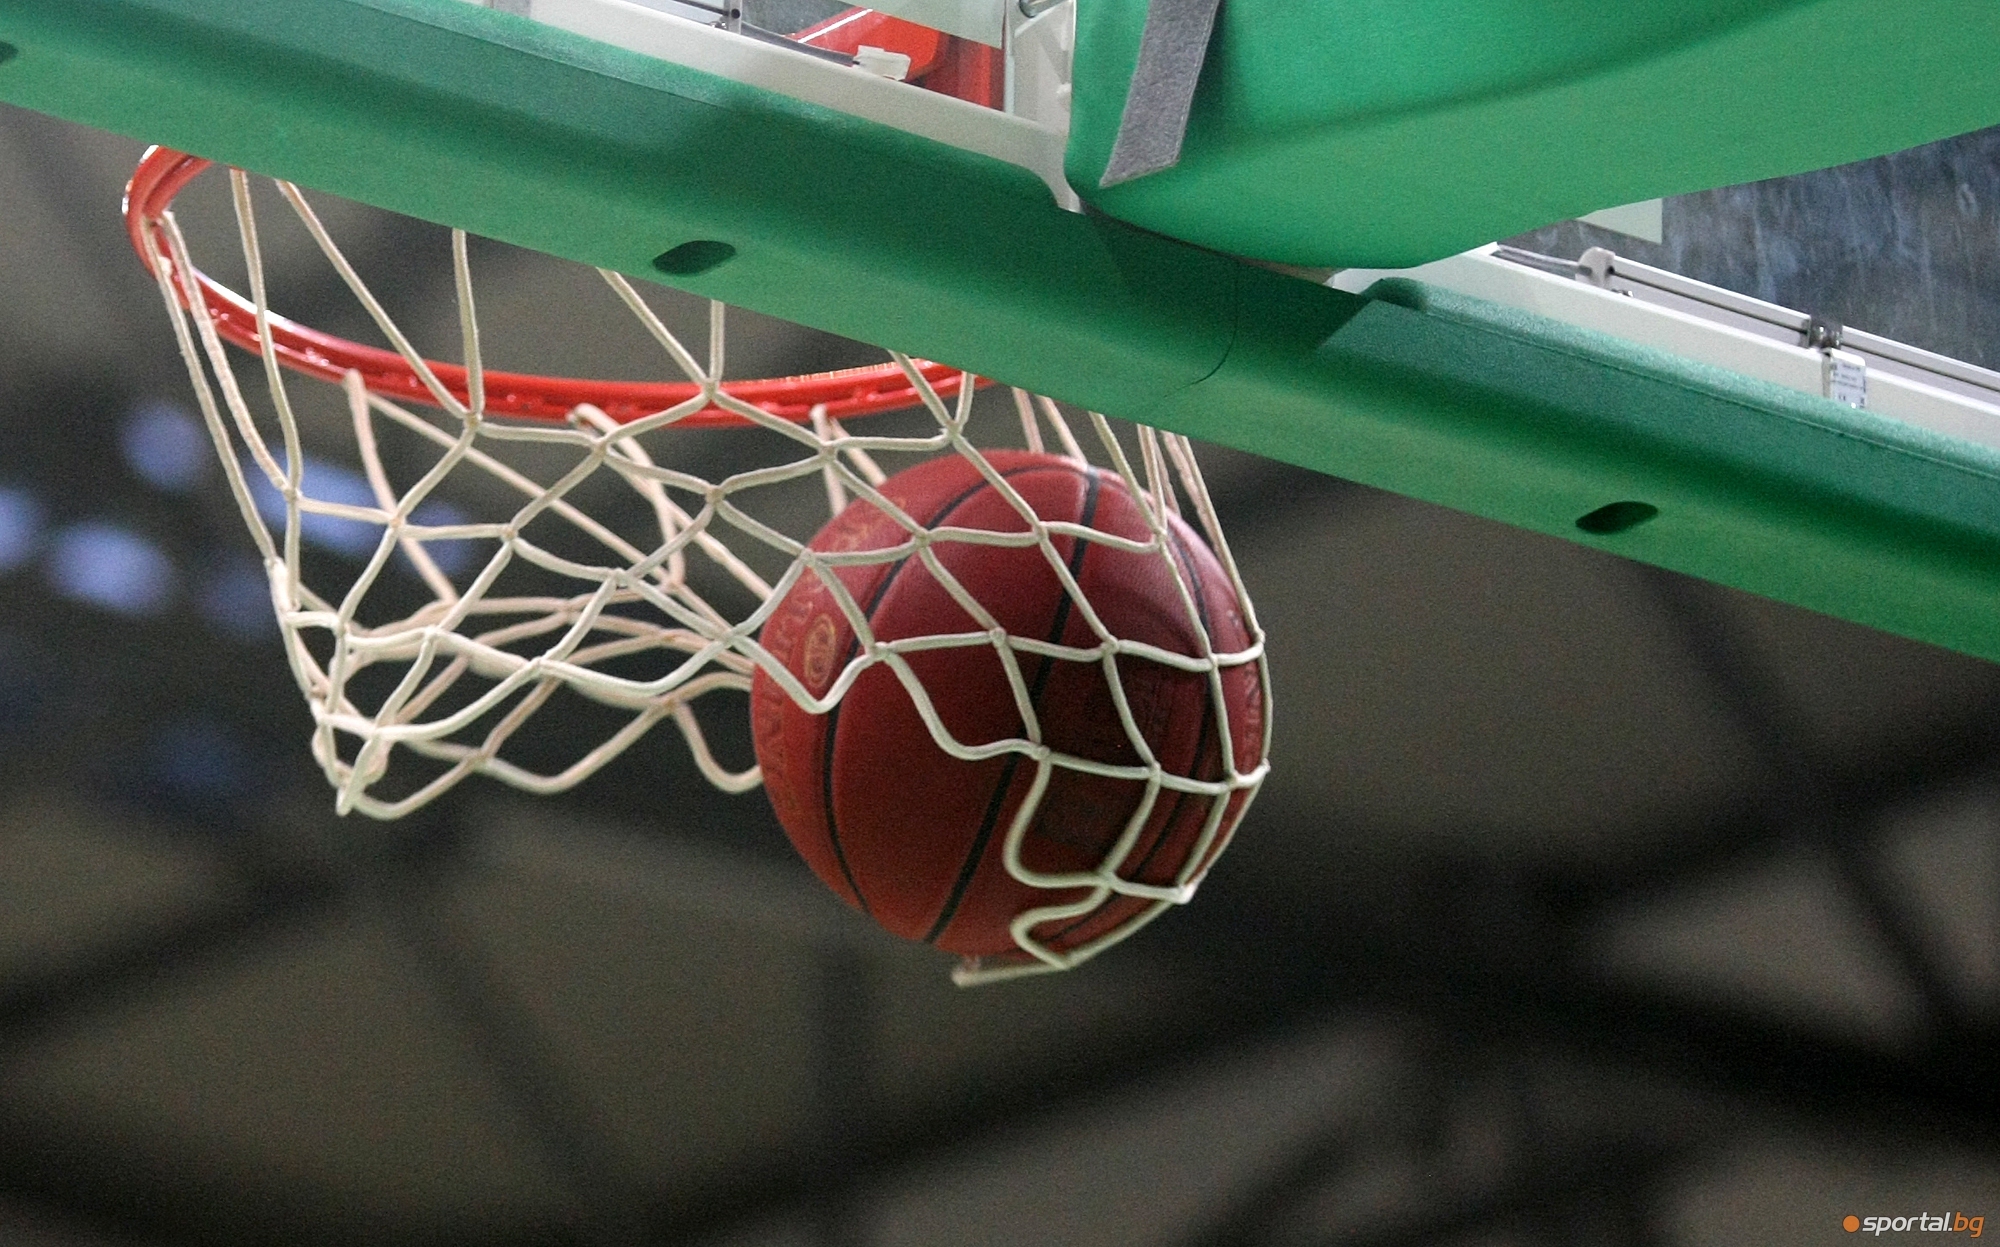 Баскетболен клуб Черно море Тича излезе с открито писмо по